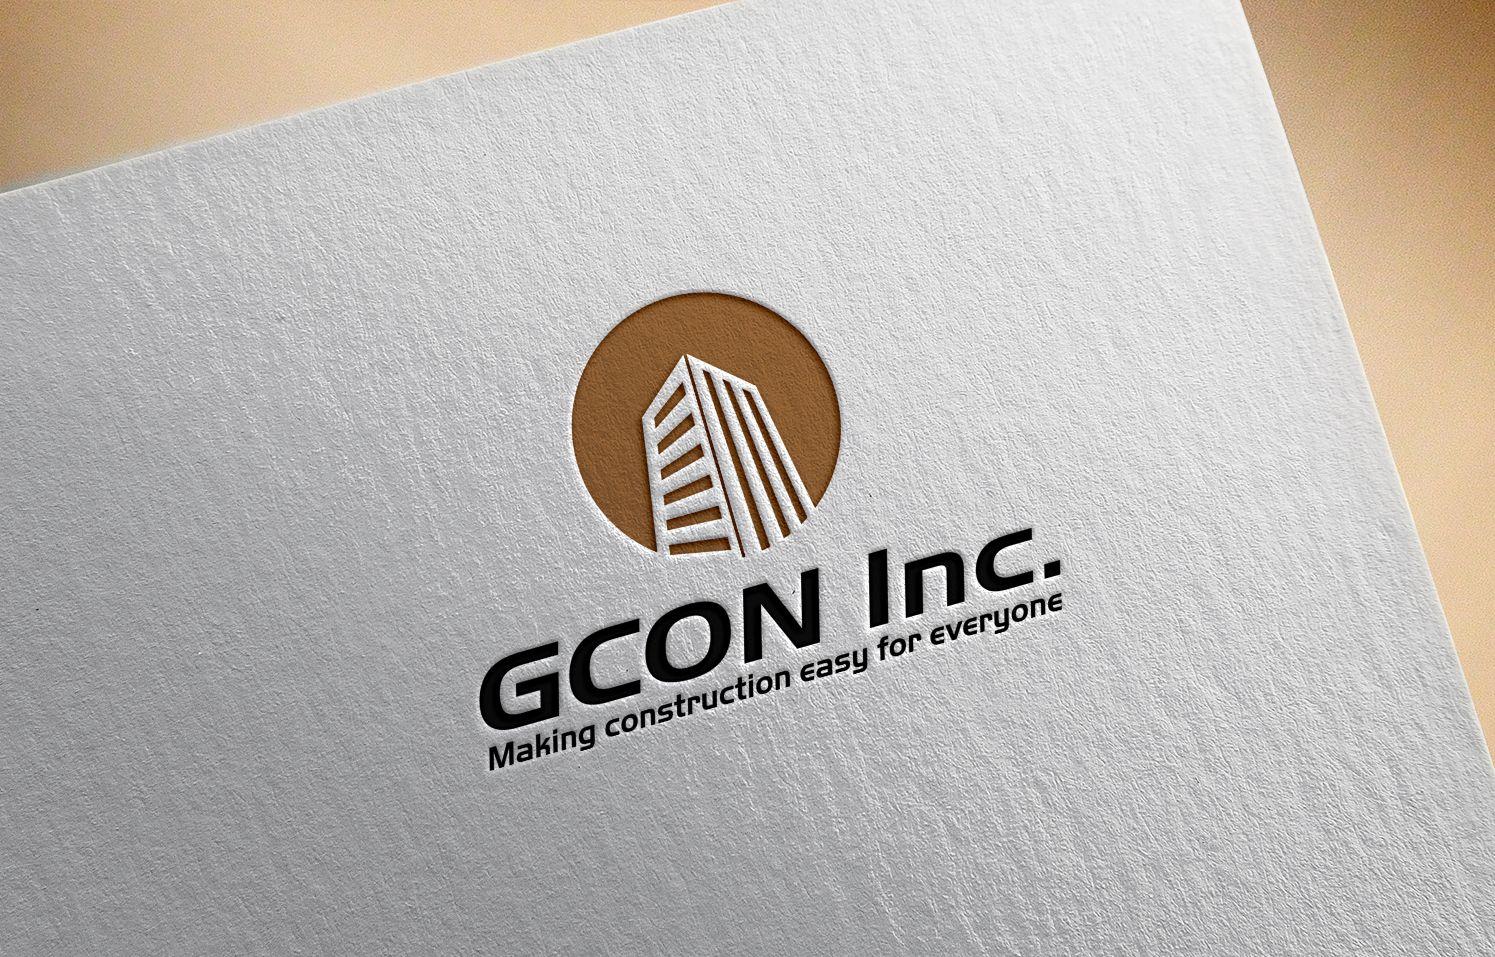 Gcon Logo - Serious, Masculine, Construction Logo Design for GCON Inc. Making